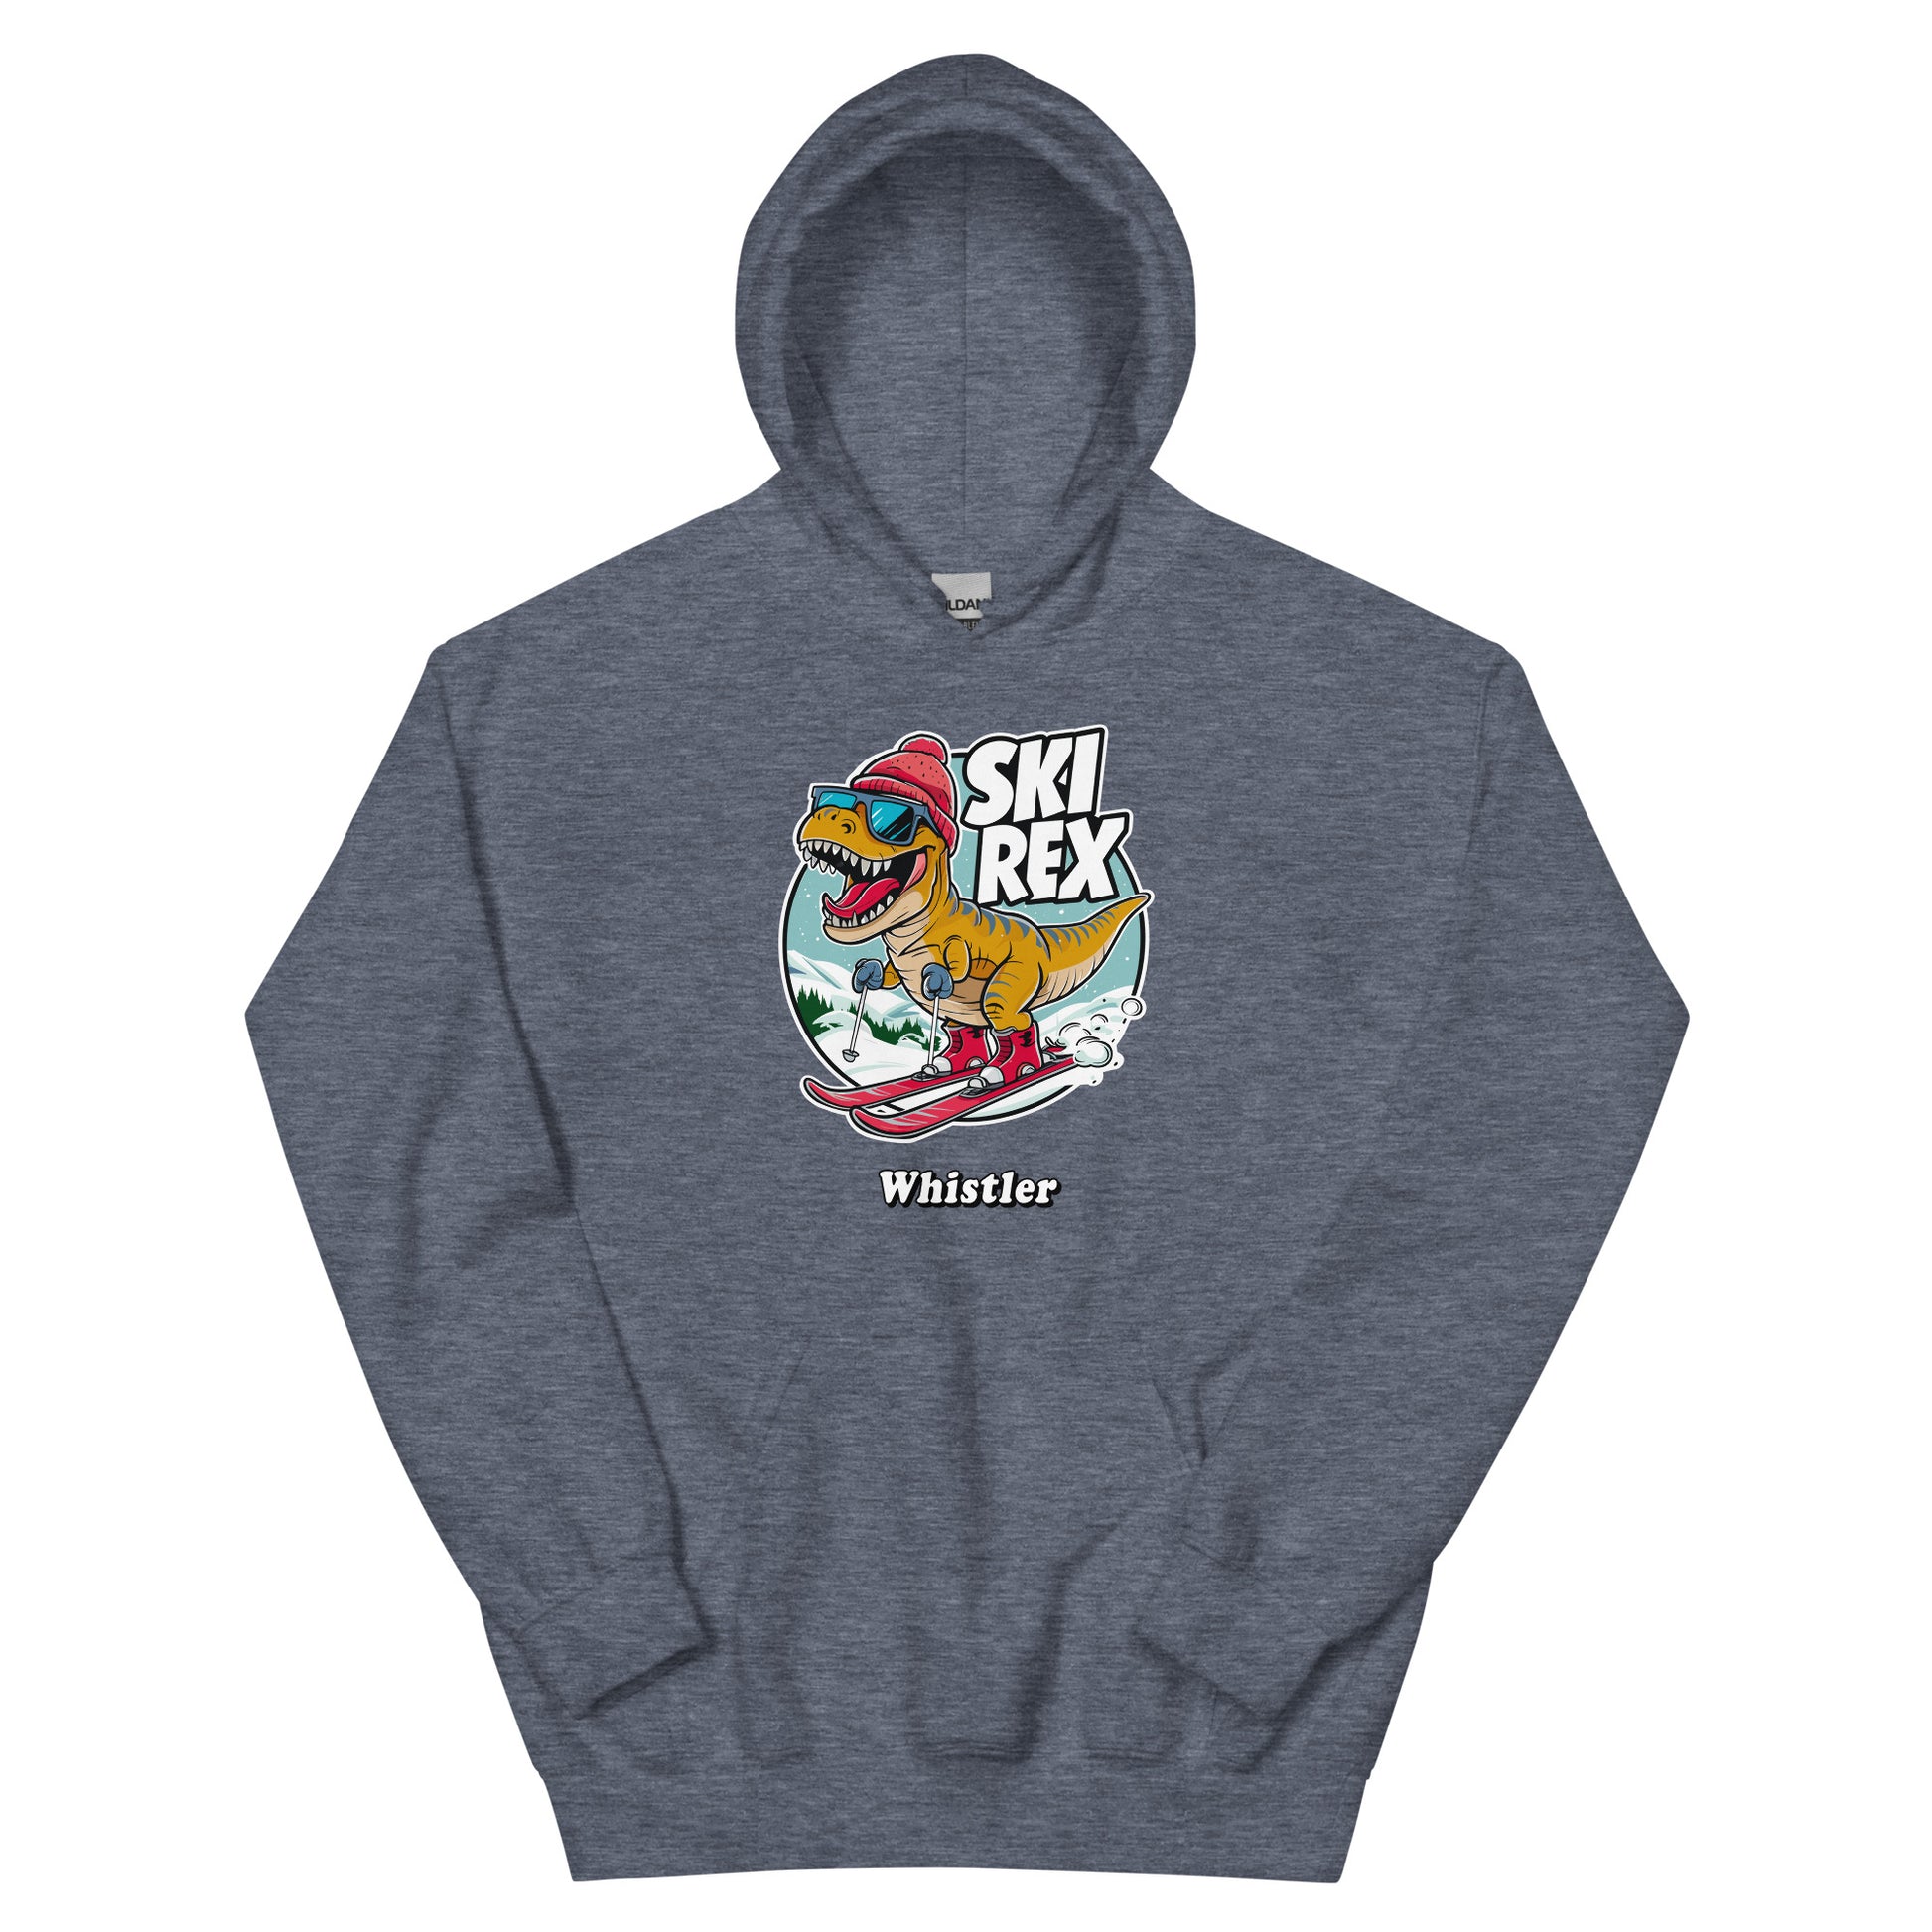 Ski Rex Whistler printed hoodie by Whistler Shirts